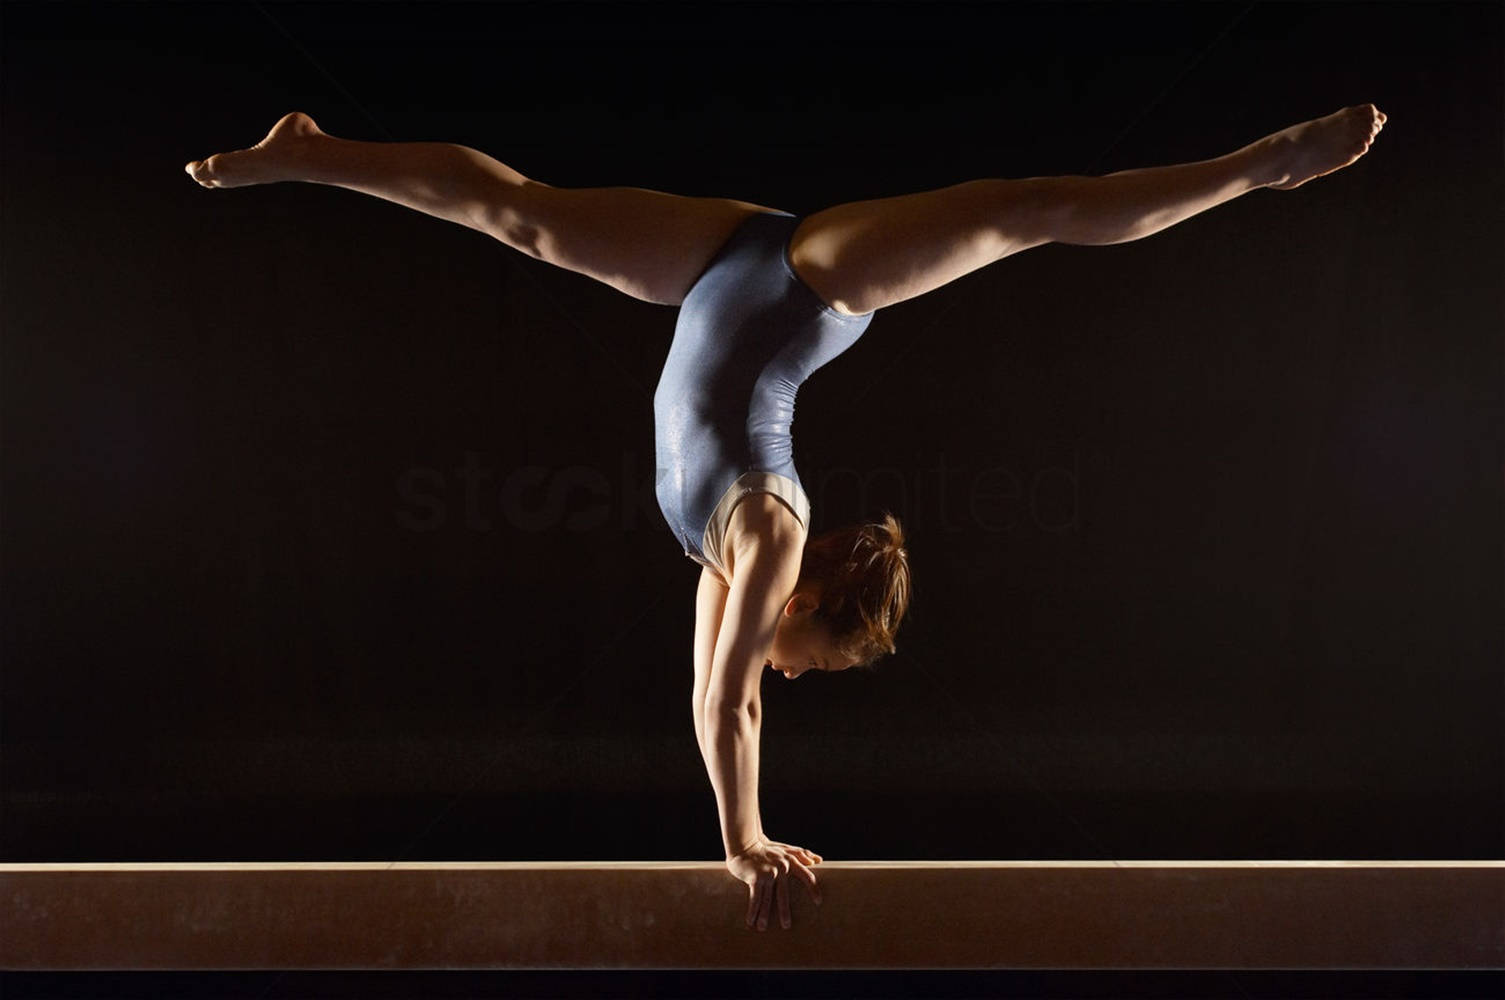 Teen Girl Handstand On Balance Beam Wallpaper